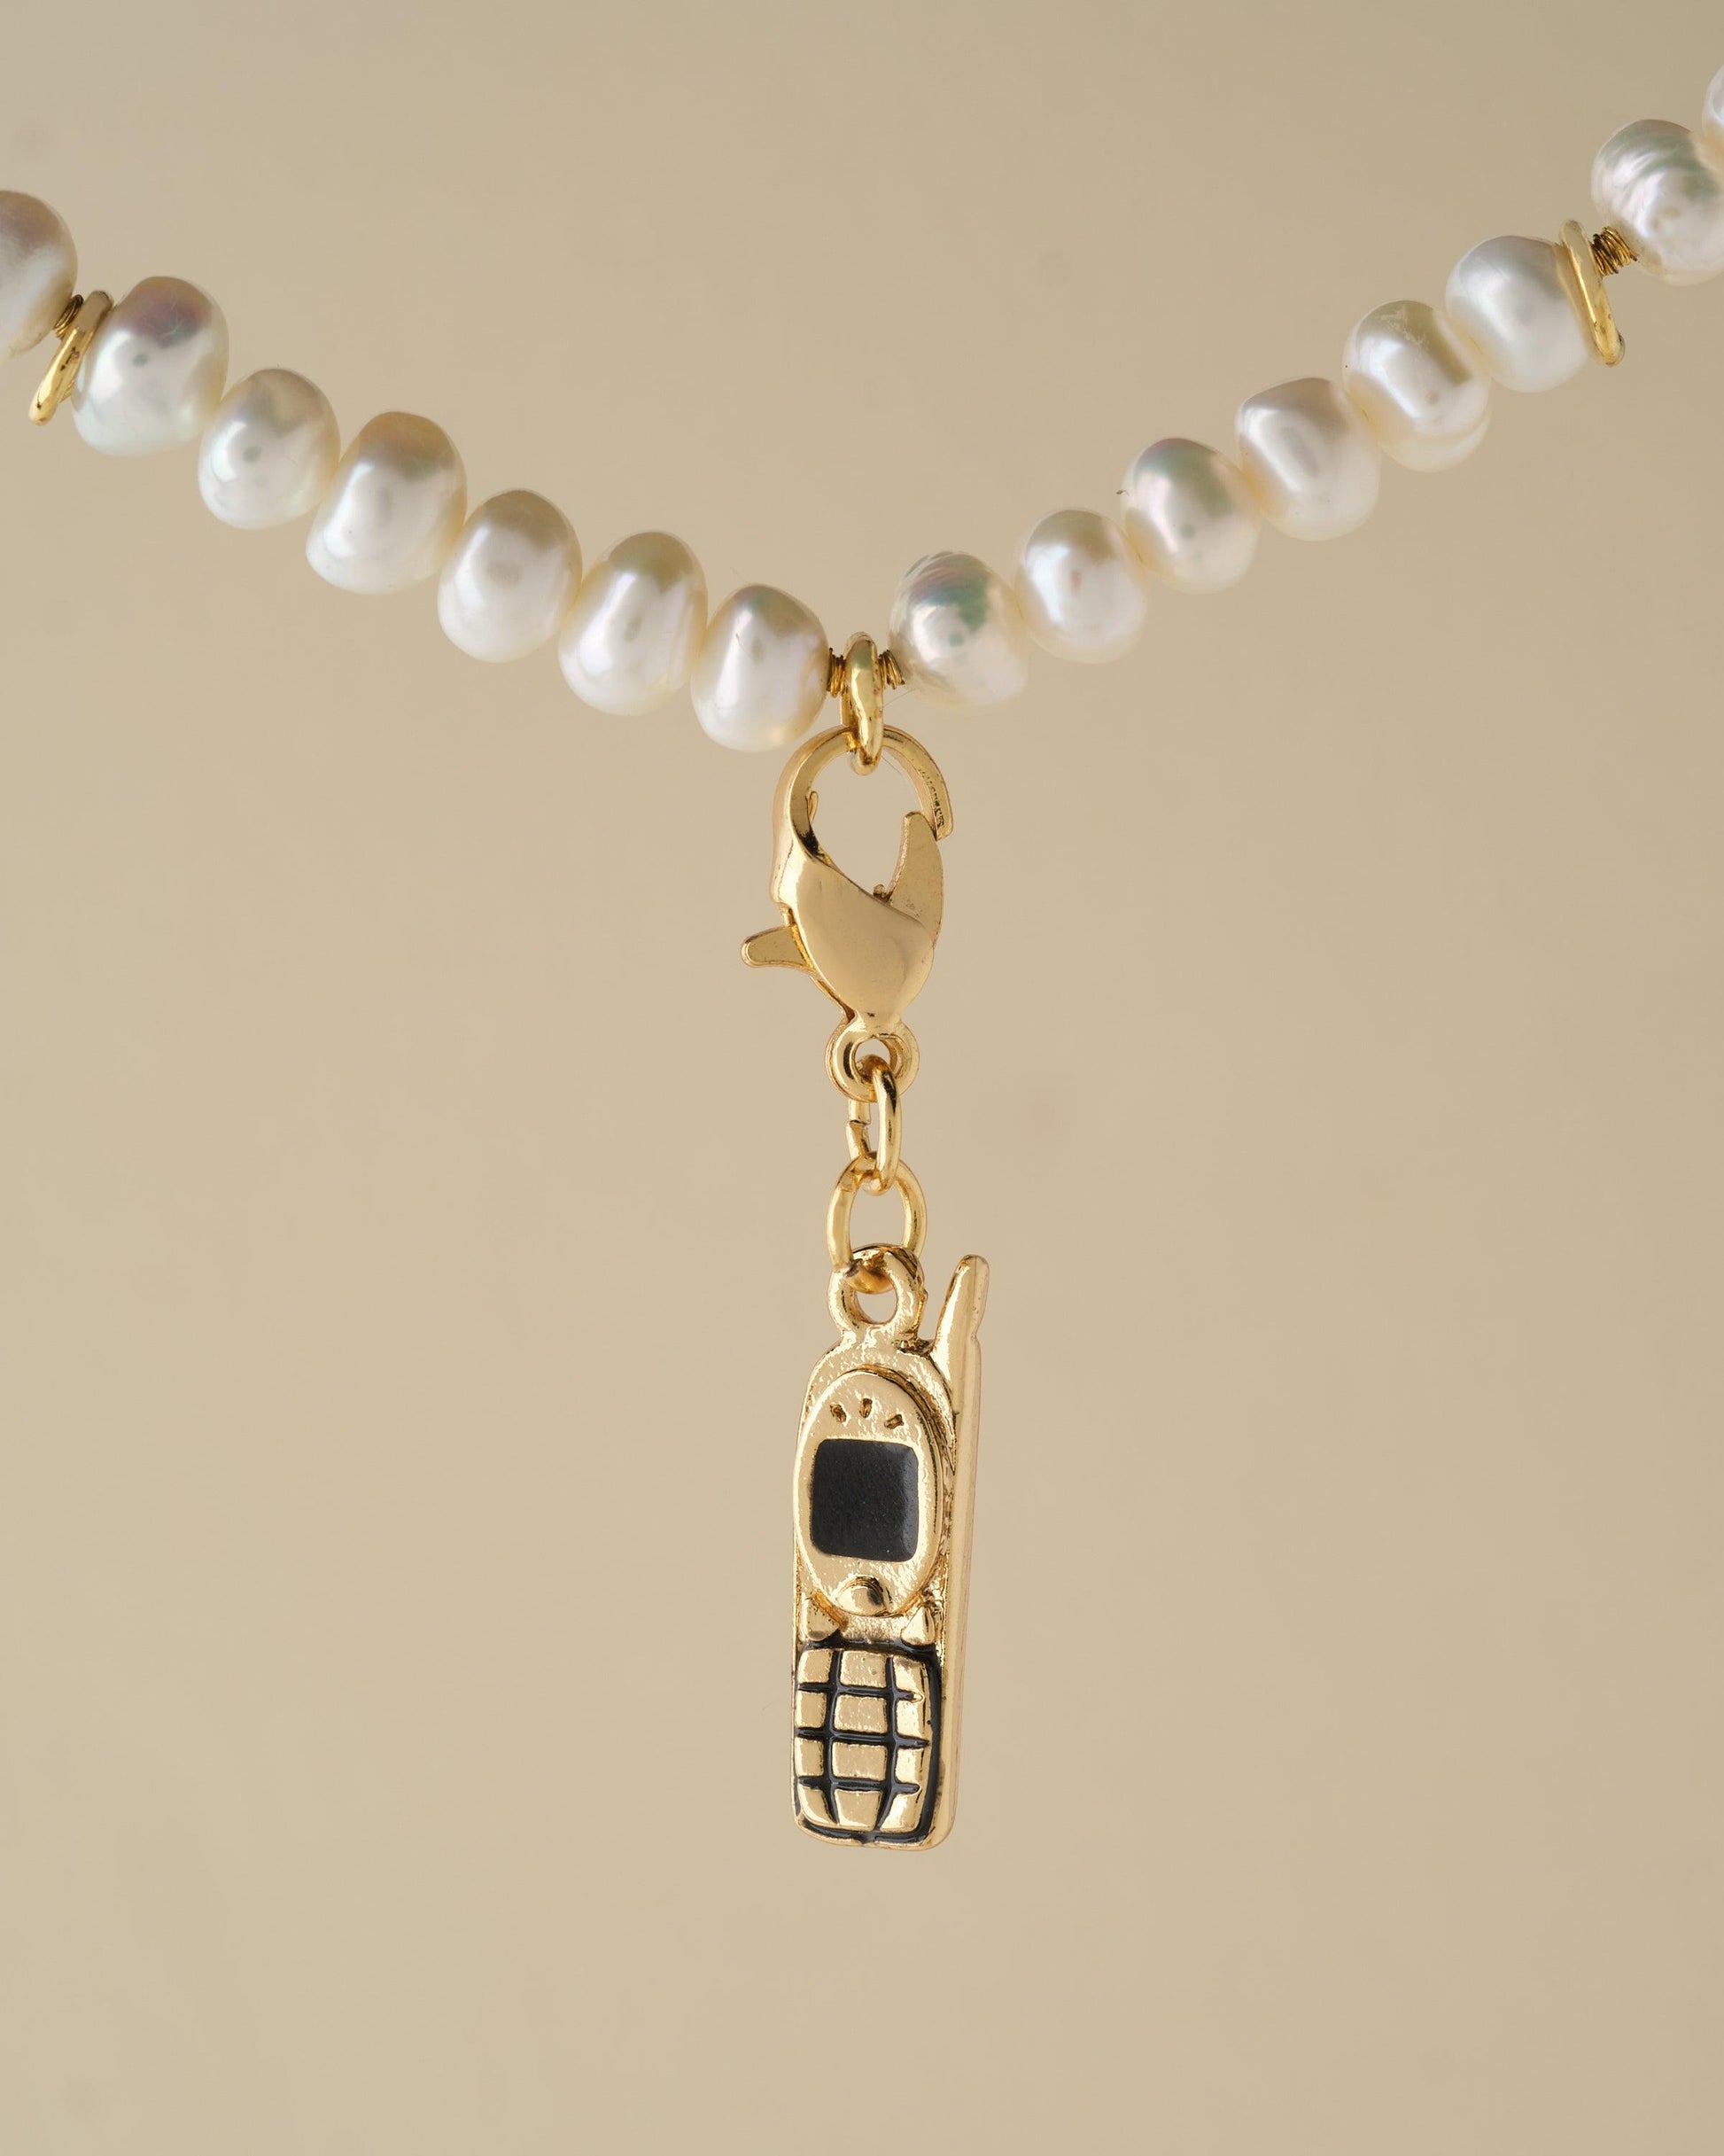 Gossiper's Favourite Charm - Chandrani Pearls